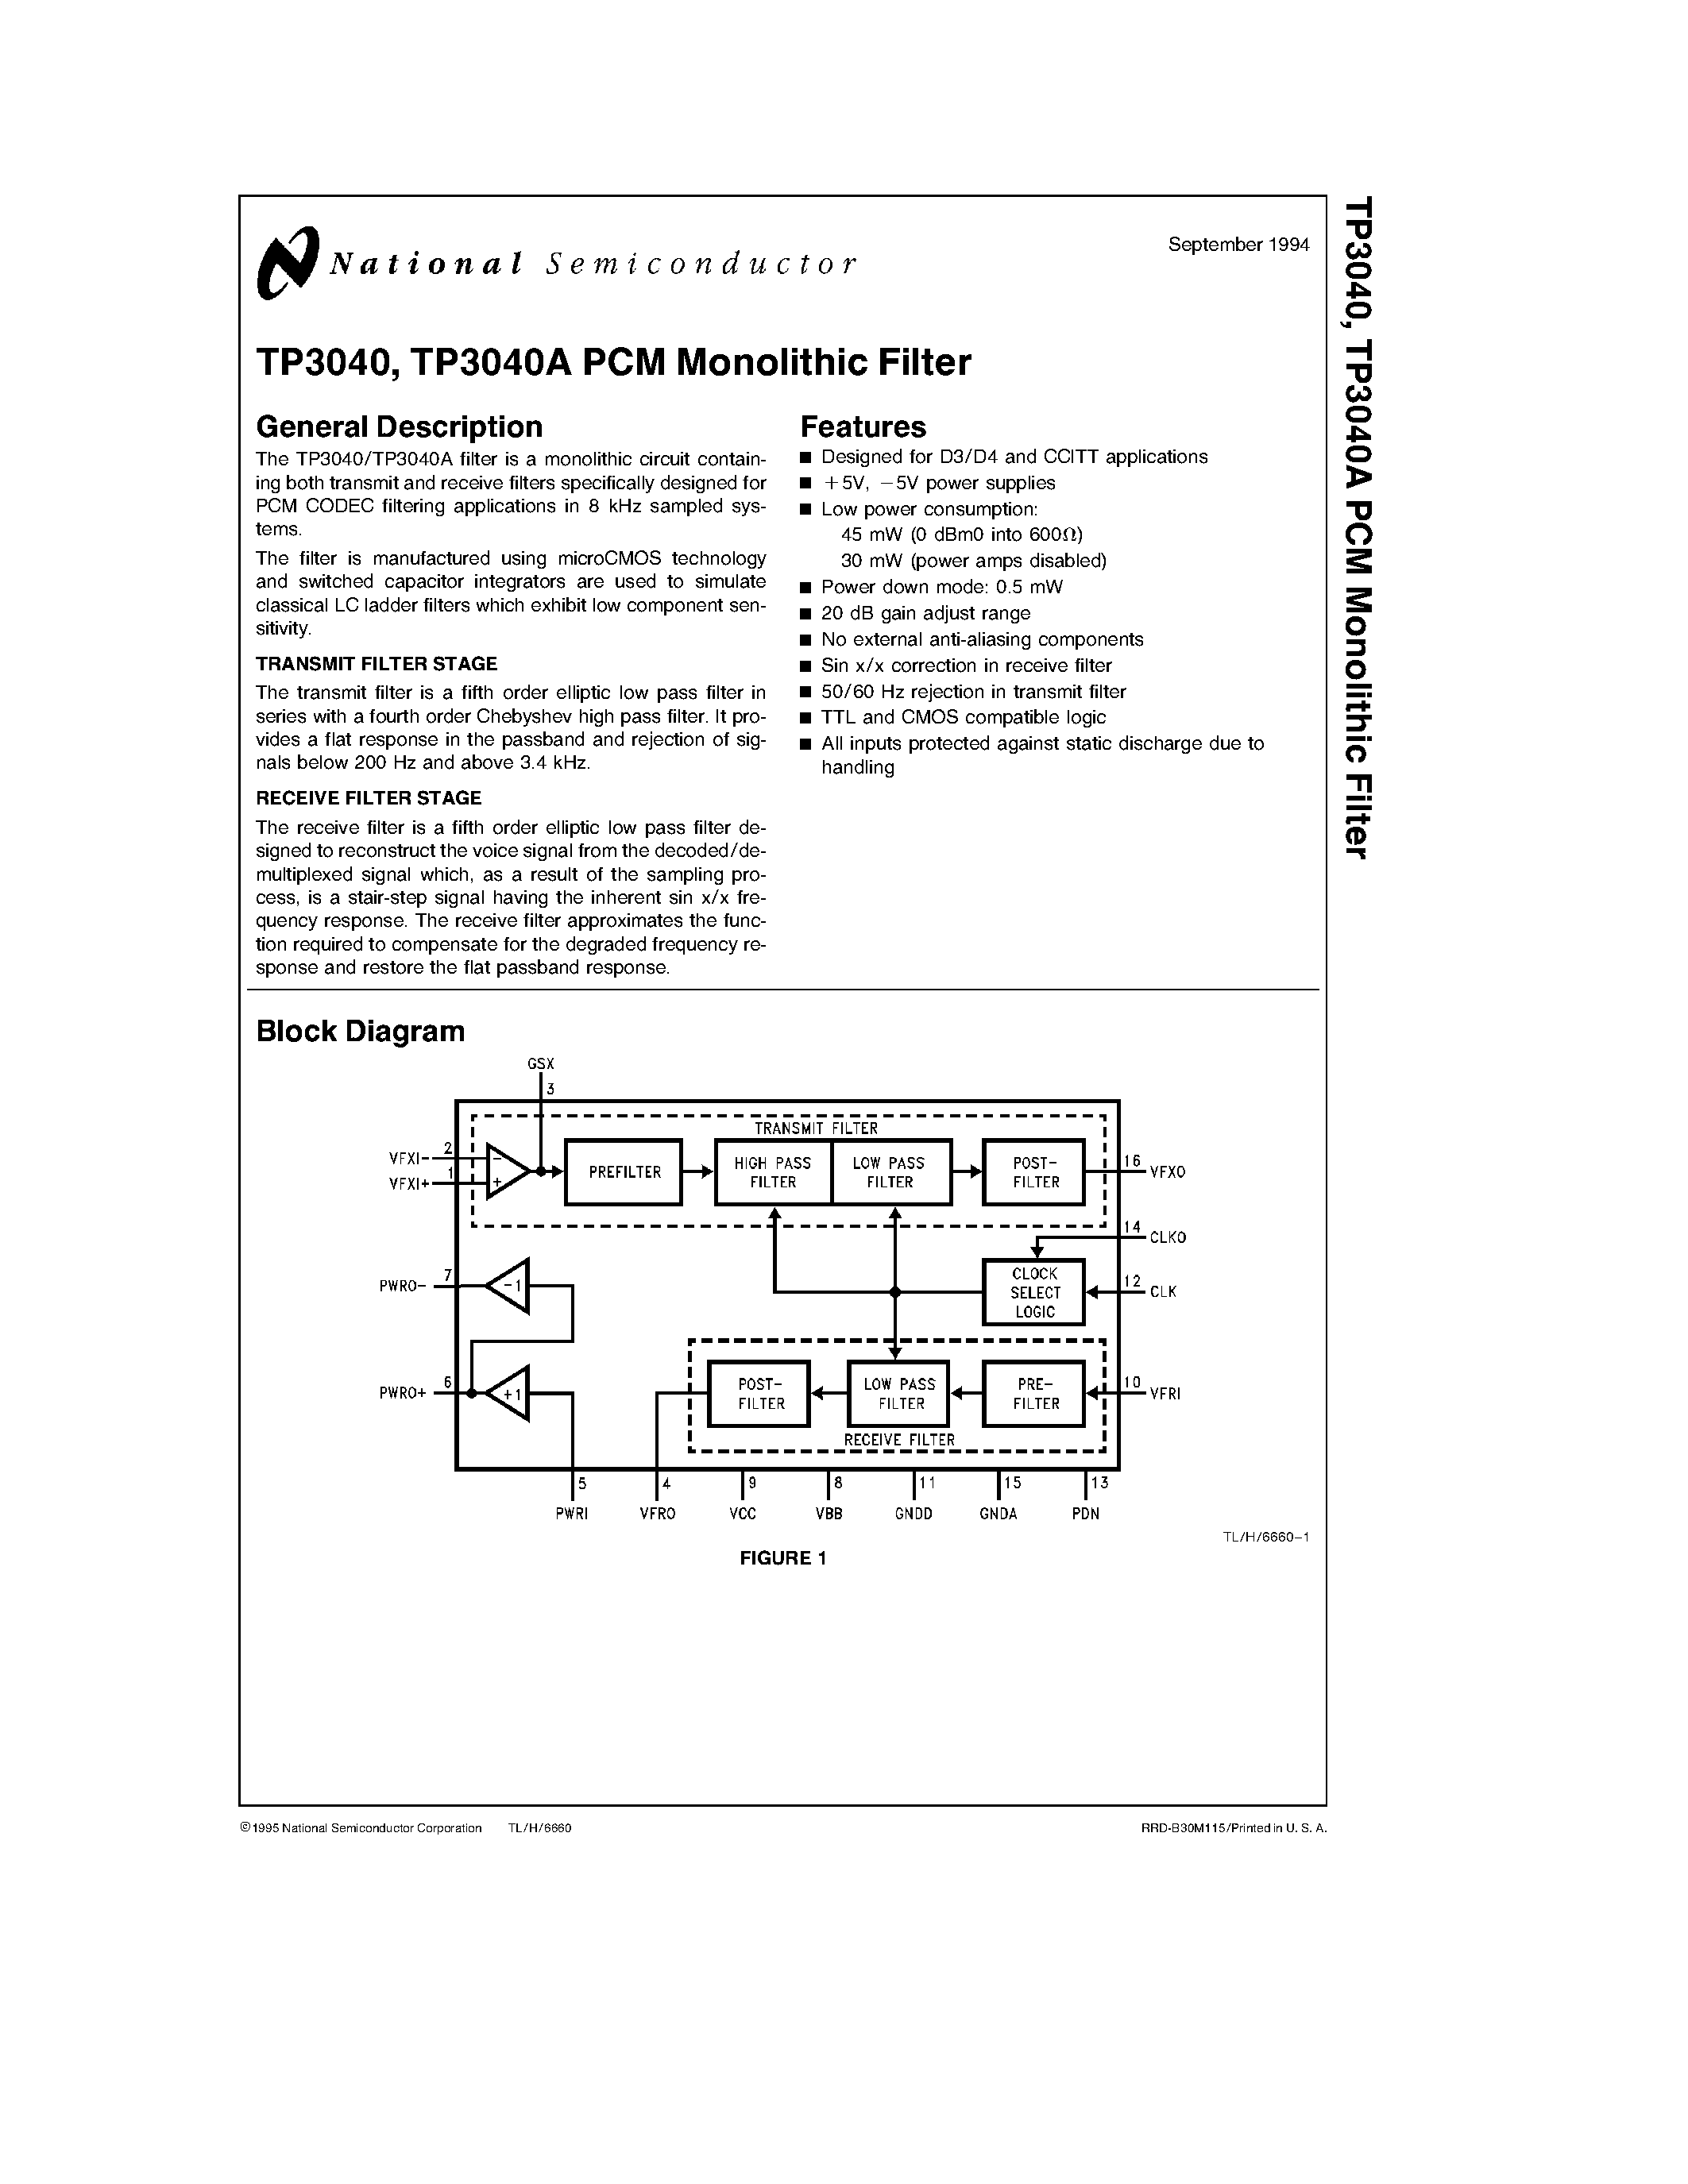 Datasheet TP3040AJ - TP3040/ TP3040A PCM Monolithic Filter page 1